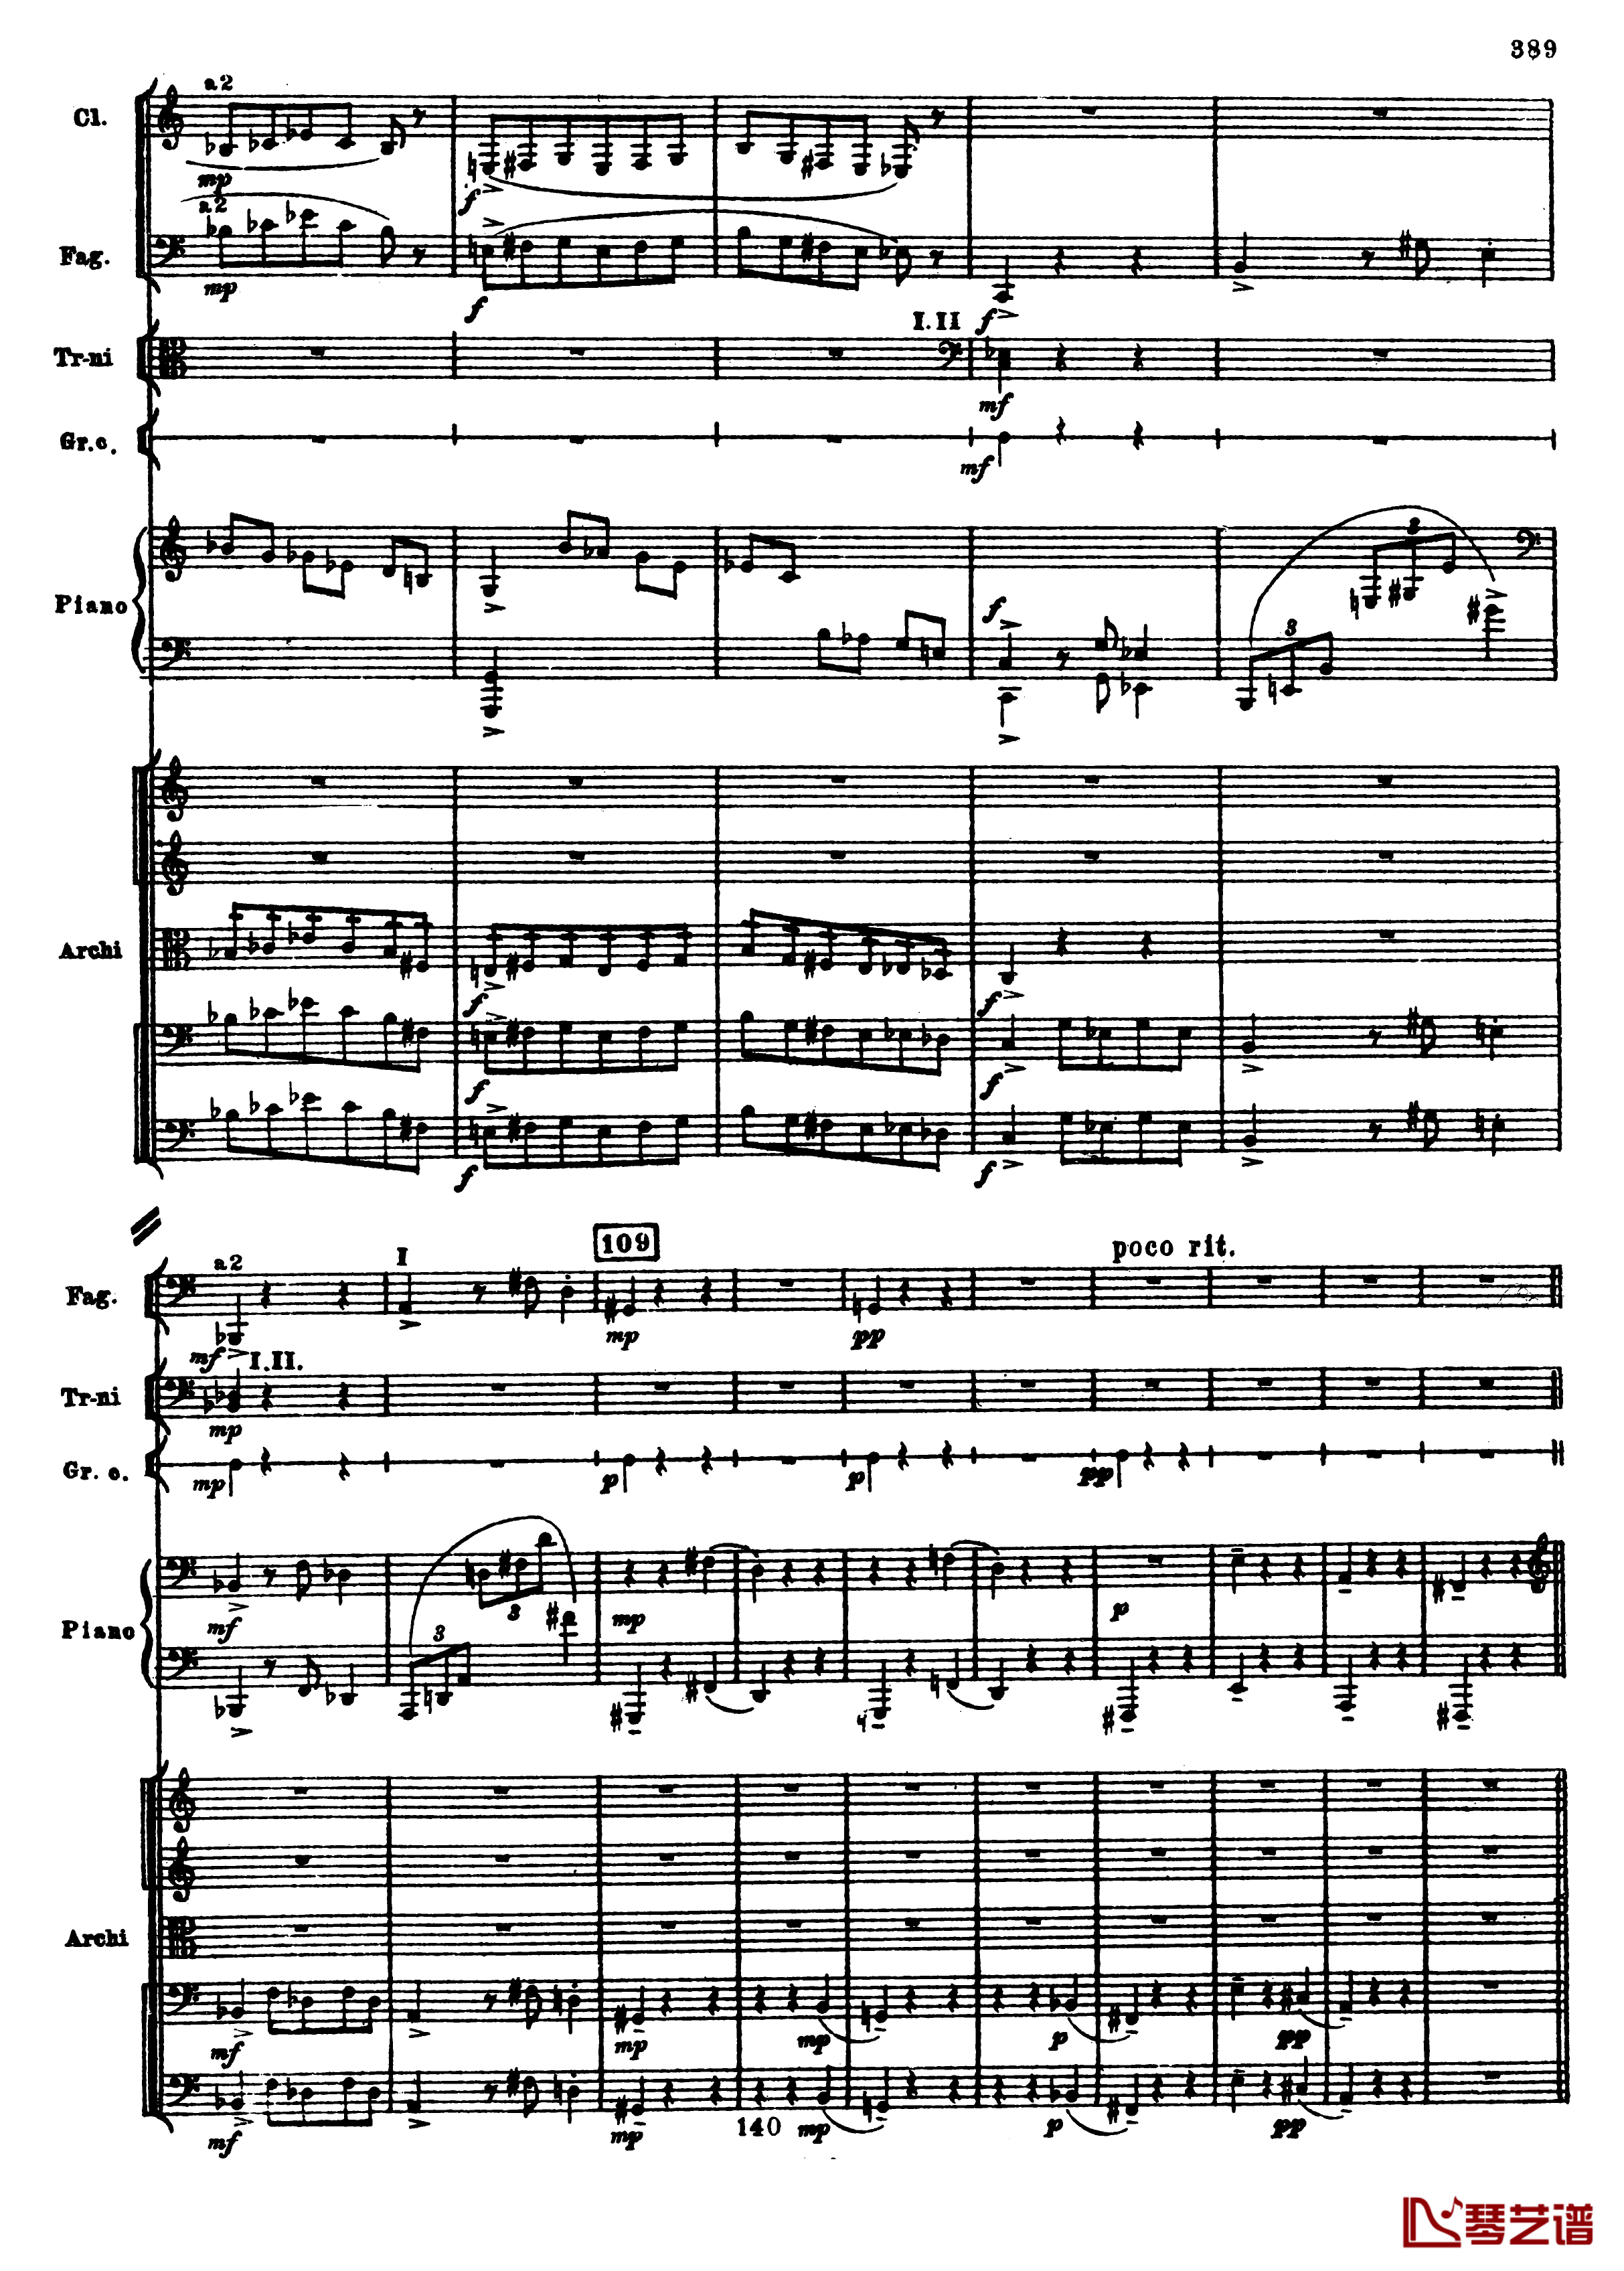 普罗科菲耶夫第三钢琴协奏曲钢琴谱-总谱-普罗科非耶夫121